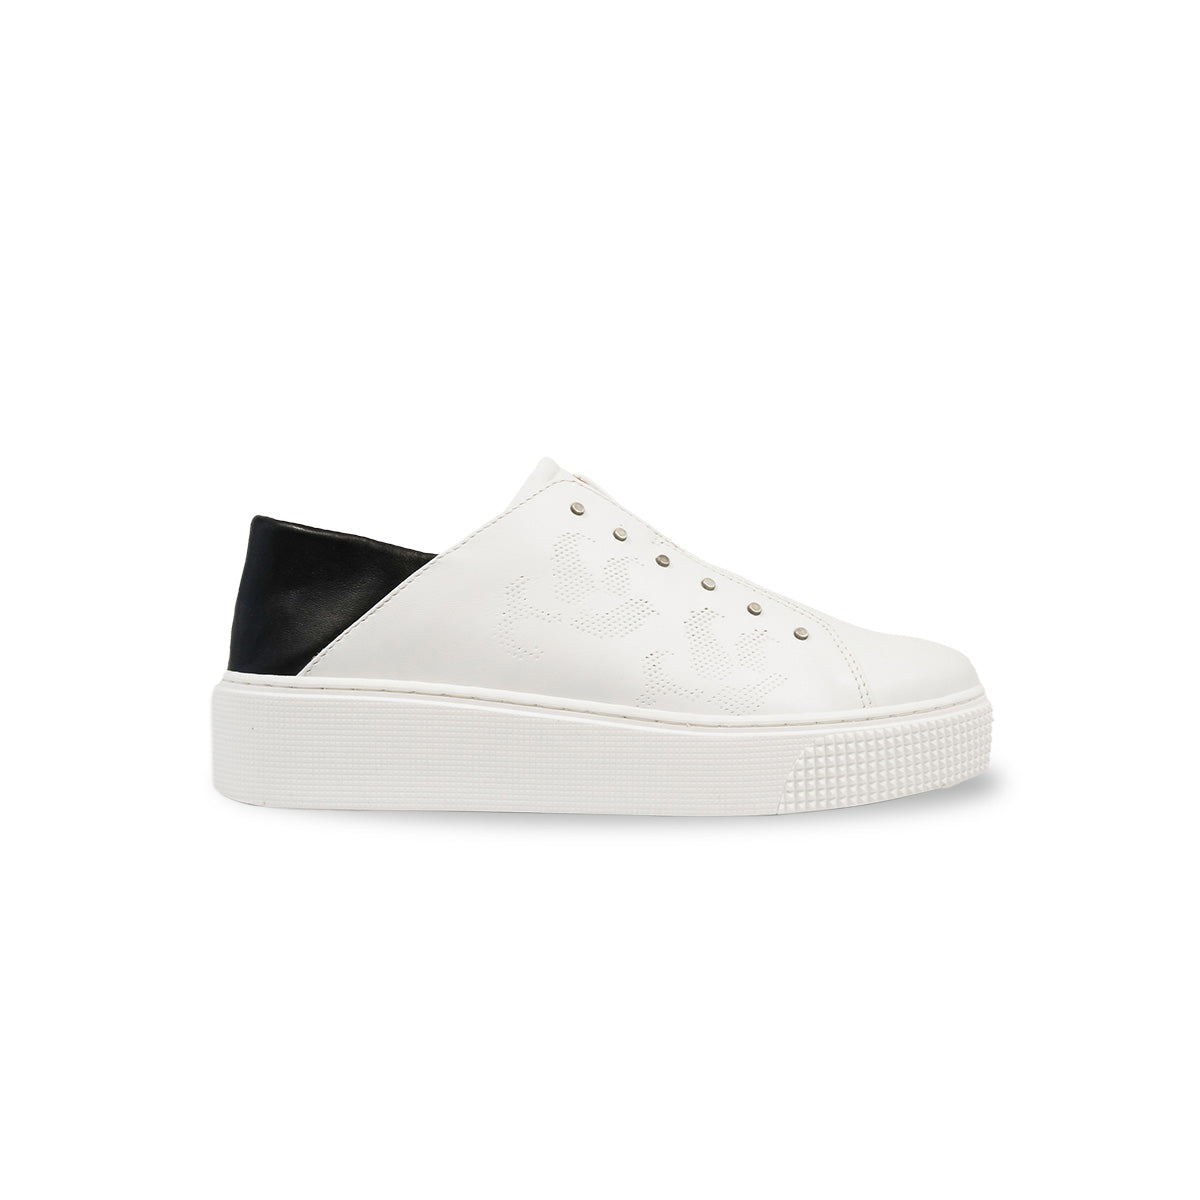 MJUS - Slip On Sneaker in Bianco